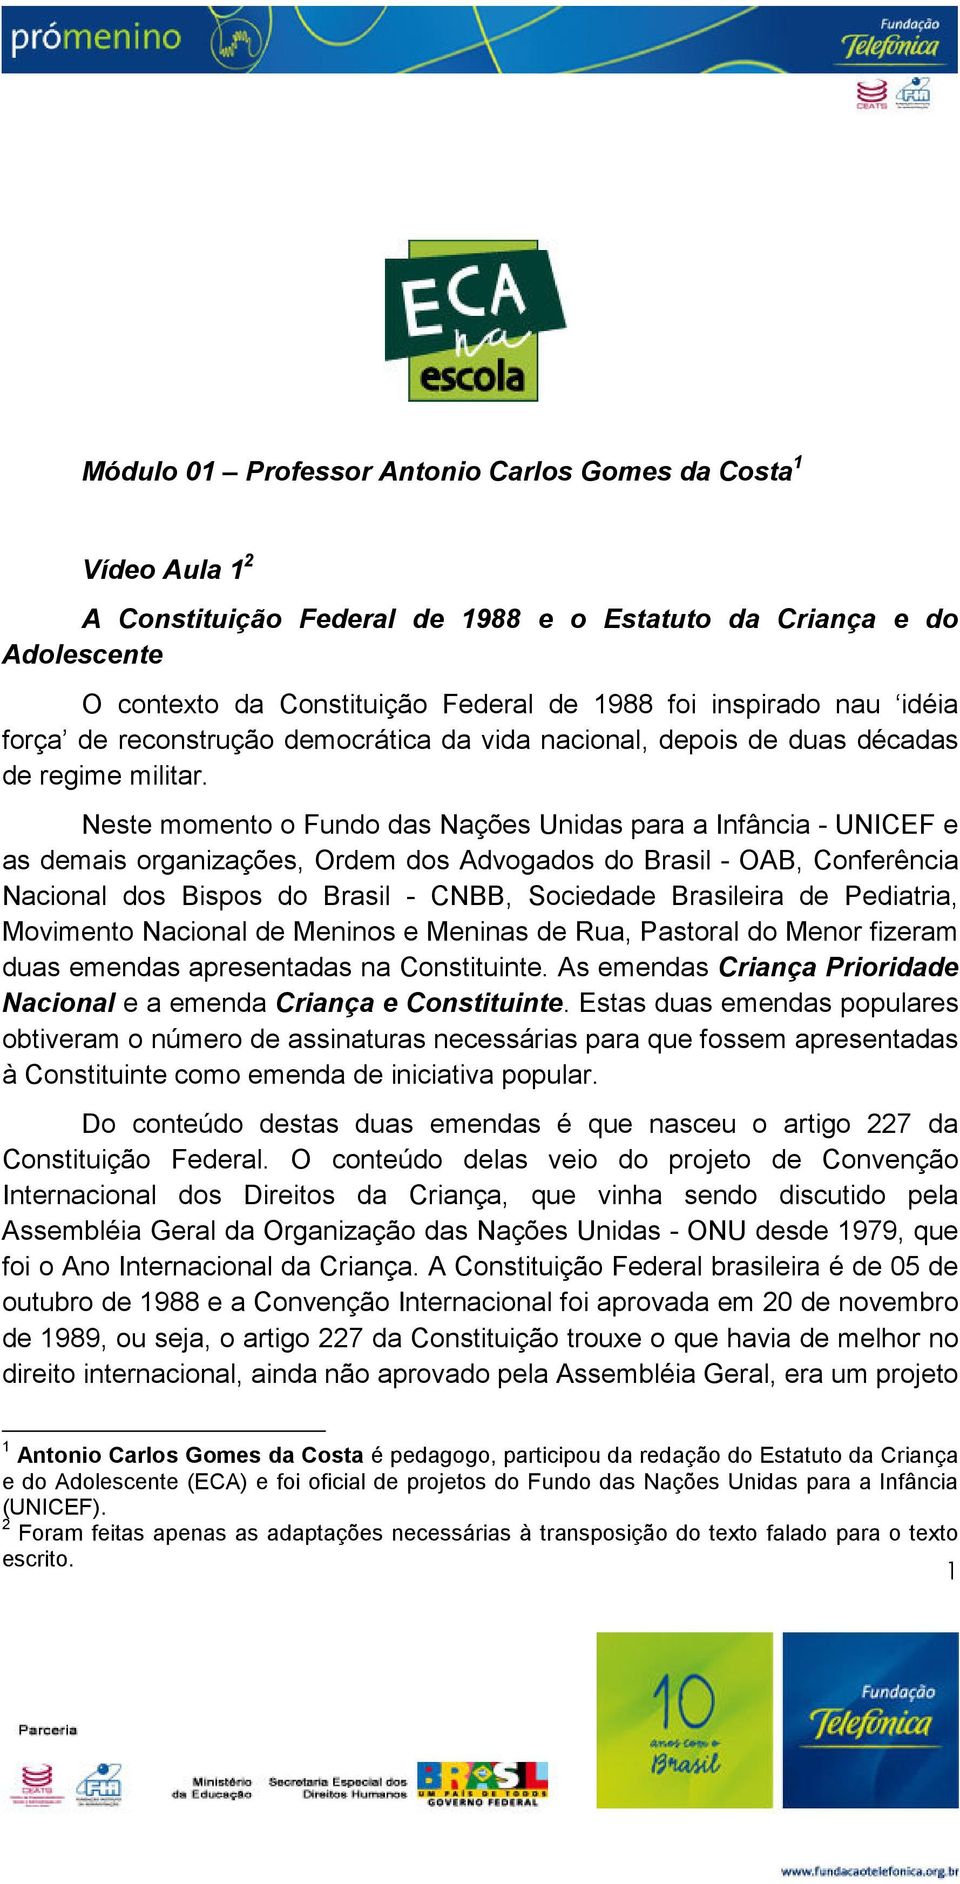 Neste momento o Fundo das Nações Unidas para a Infância - UNICEF e as demais organizações, Ordem dos Advogados do Brasil - OAB, Conferência Nacional dos Bispos do Brasil - CNBB, Sociedade Brasileira